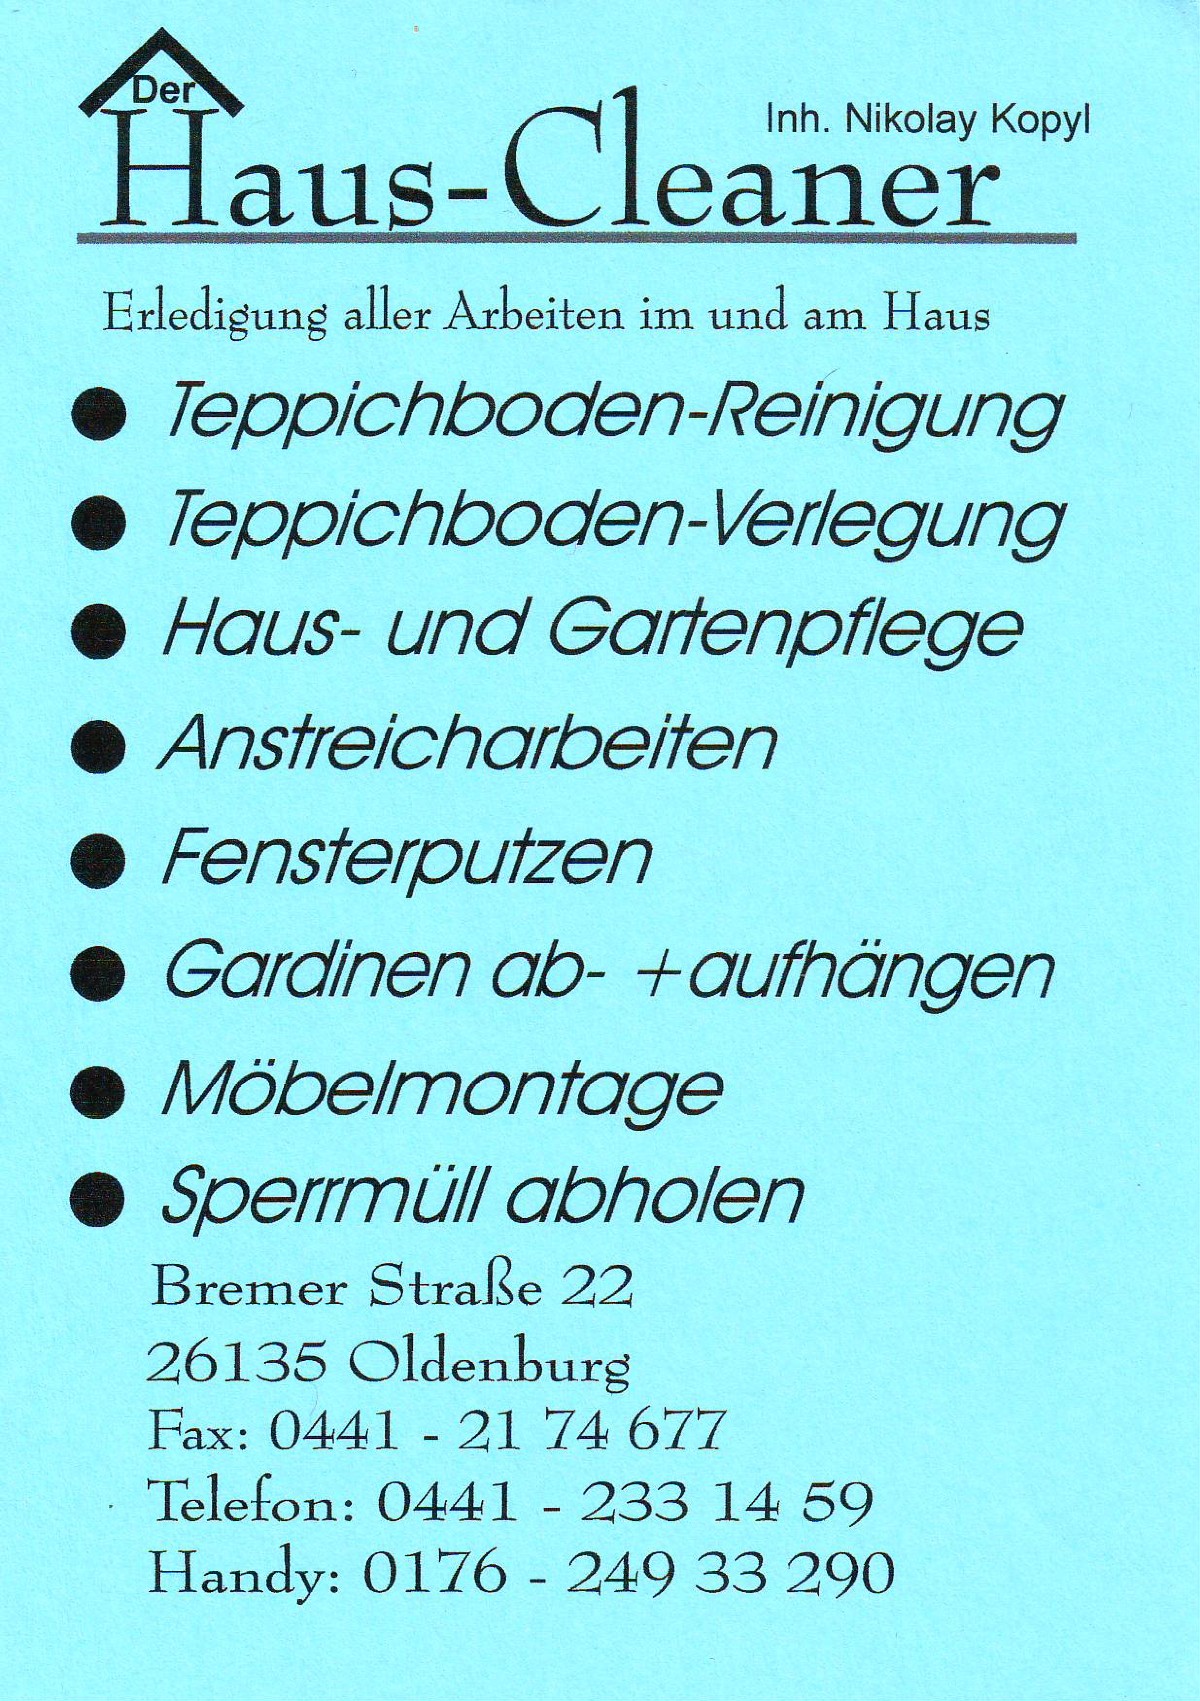 www.firmenwissen.de